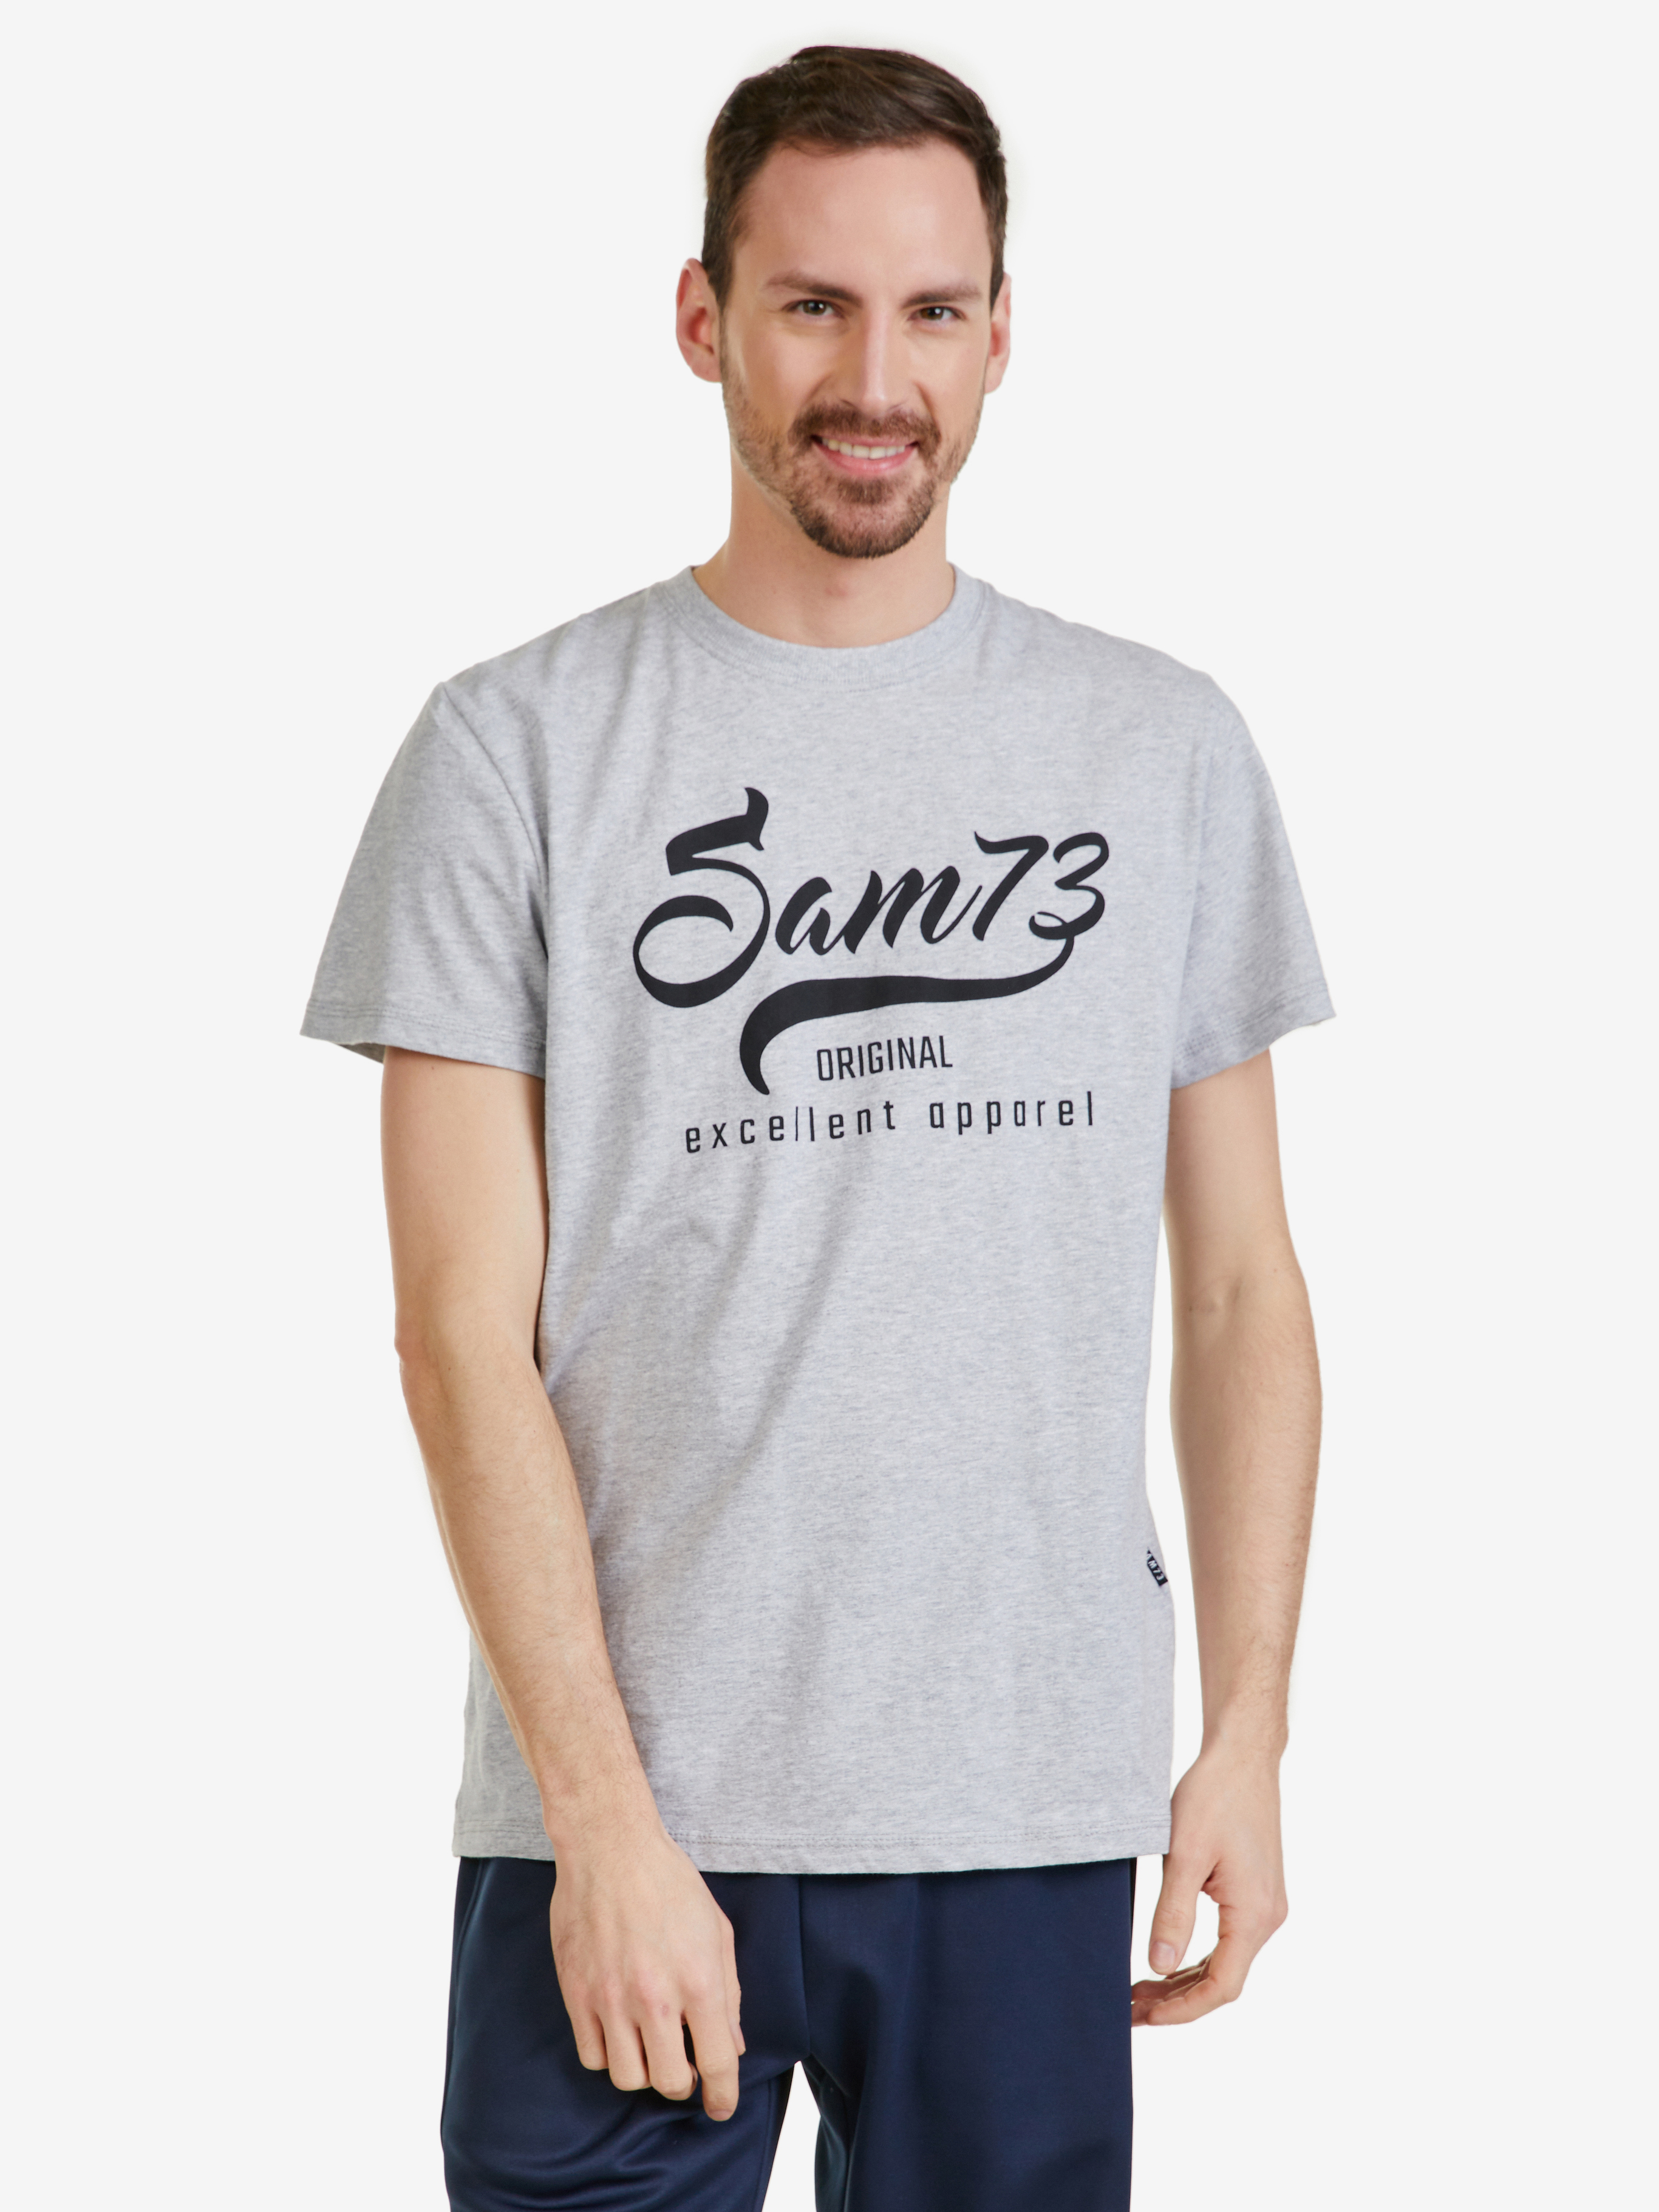 Šedé pánské žíhané tričko SAM 73 Calvin